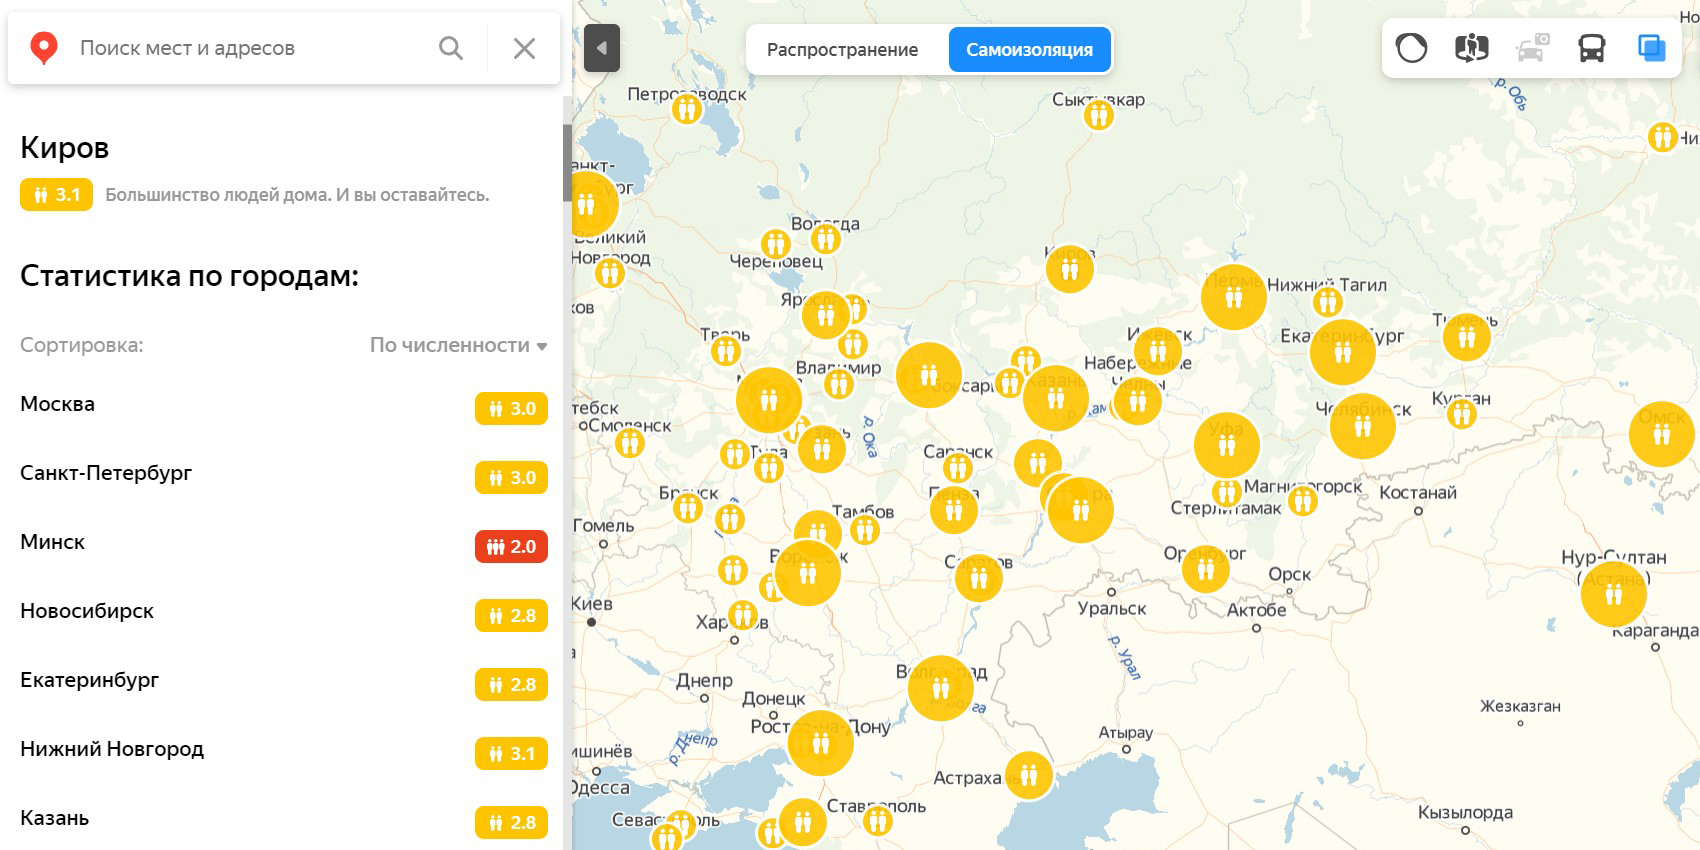 «Яндекс» покажет уровень самоизоляции в России